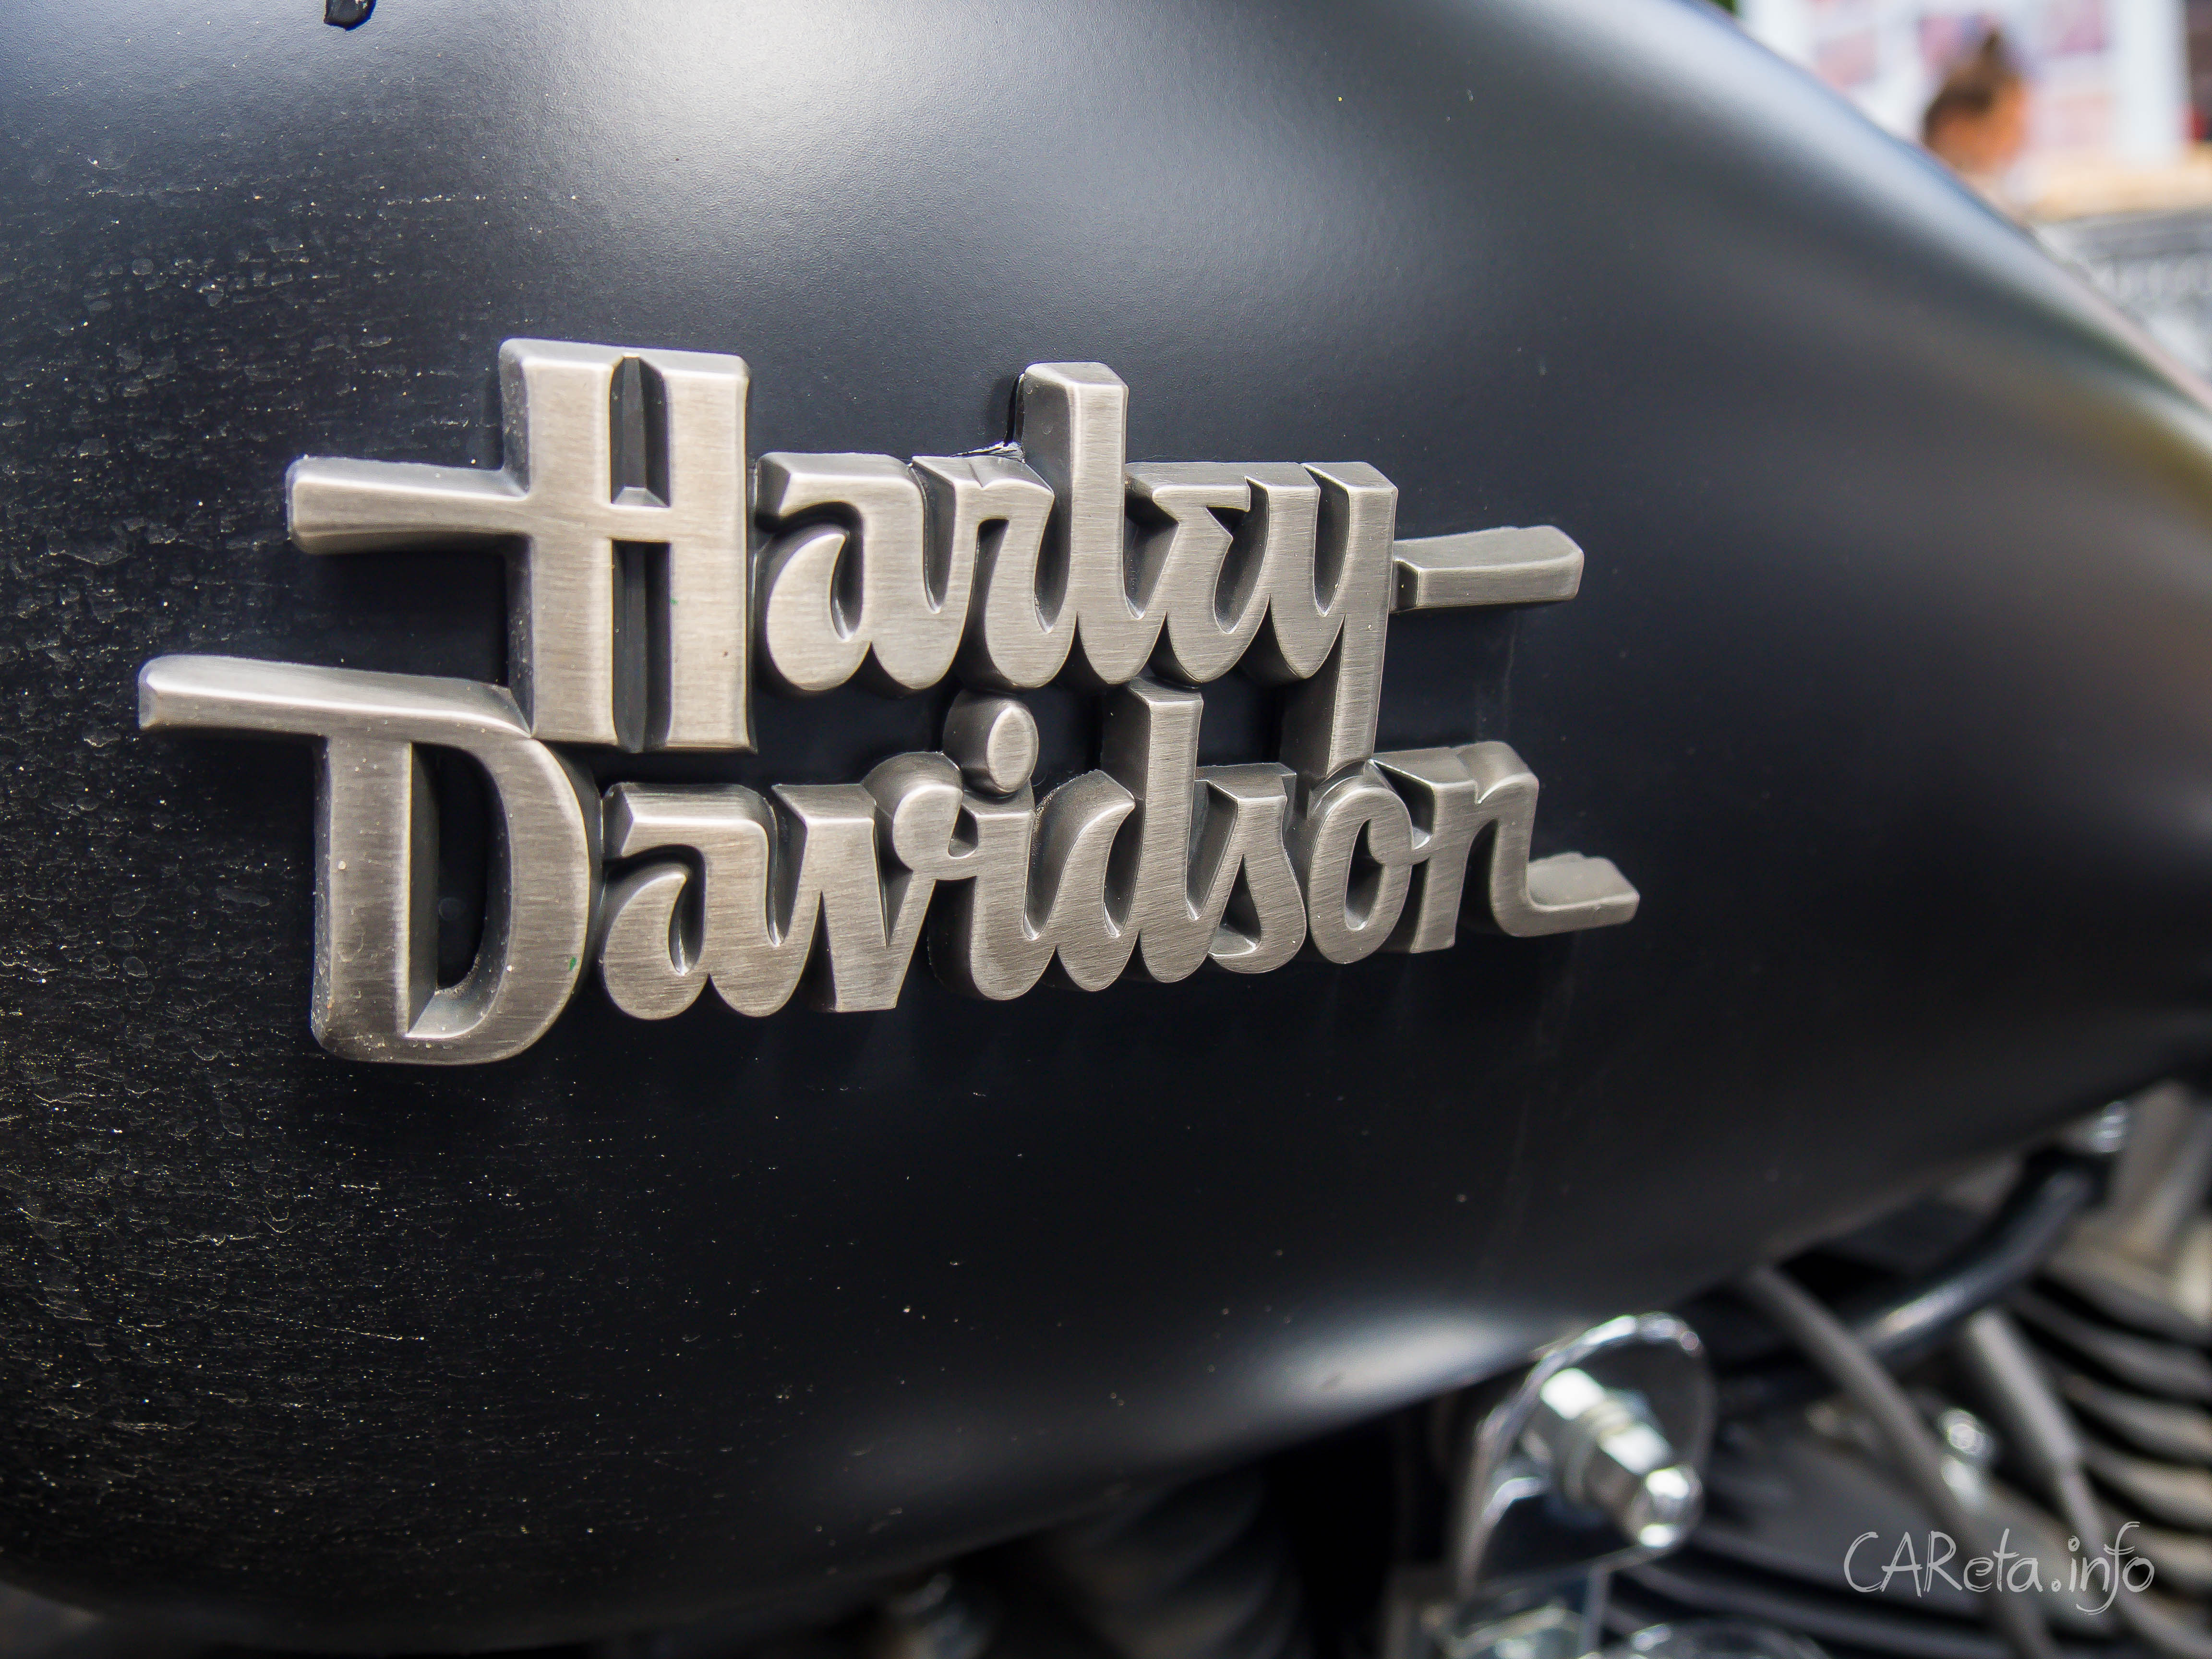 Фестиваль Harley Days на площади Островского